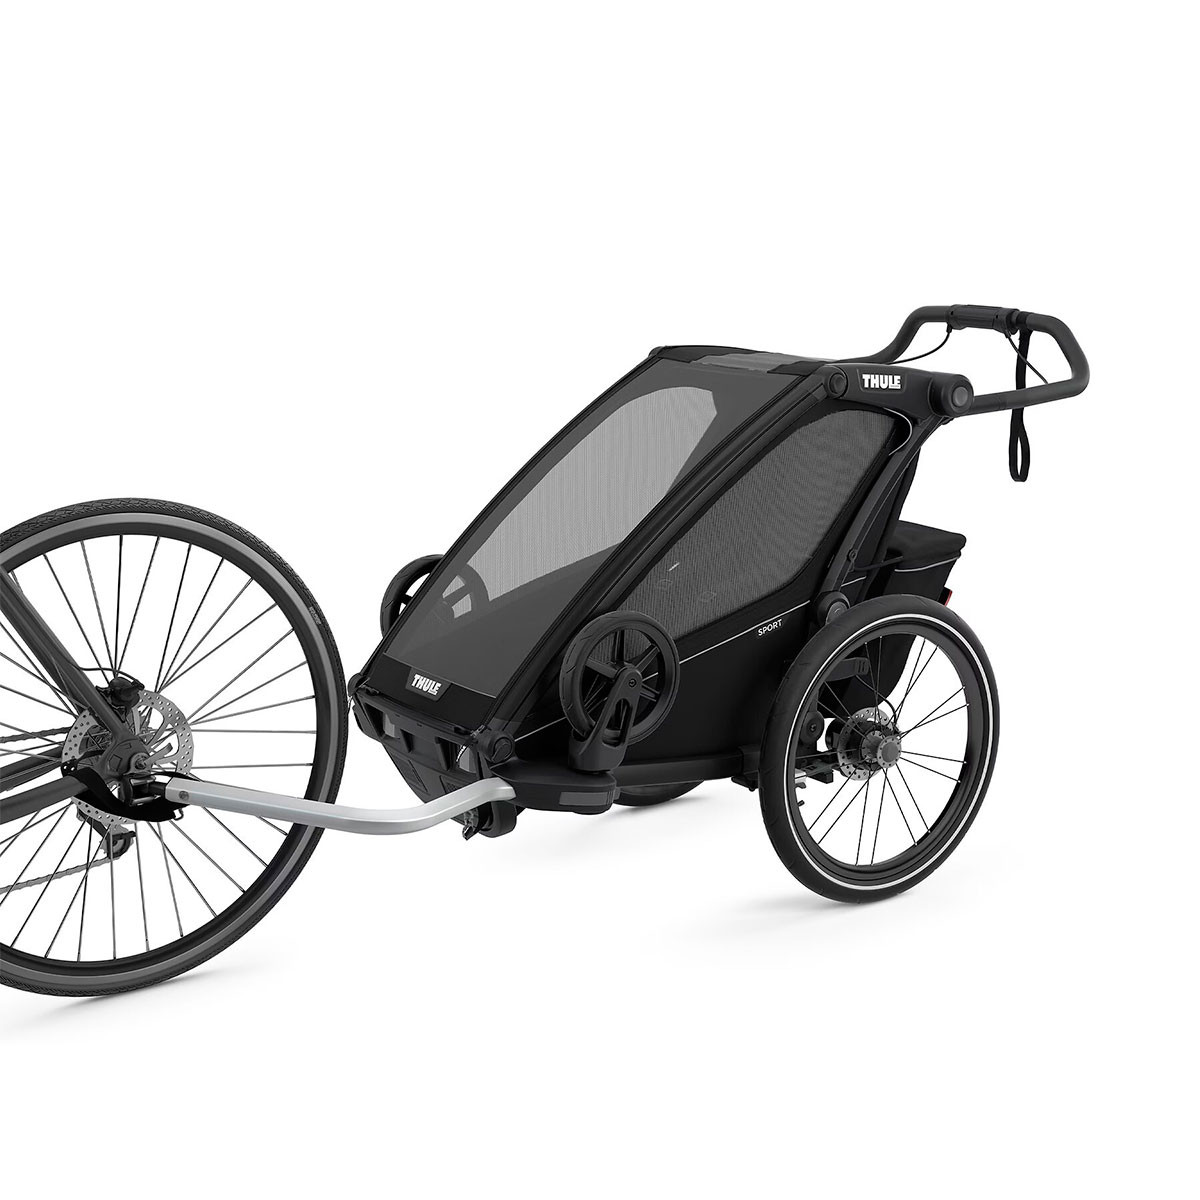 Remolque individual Chariot Sport de Thule,  multifuncional para ciclistas.